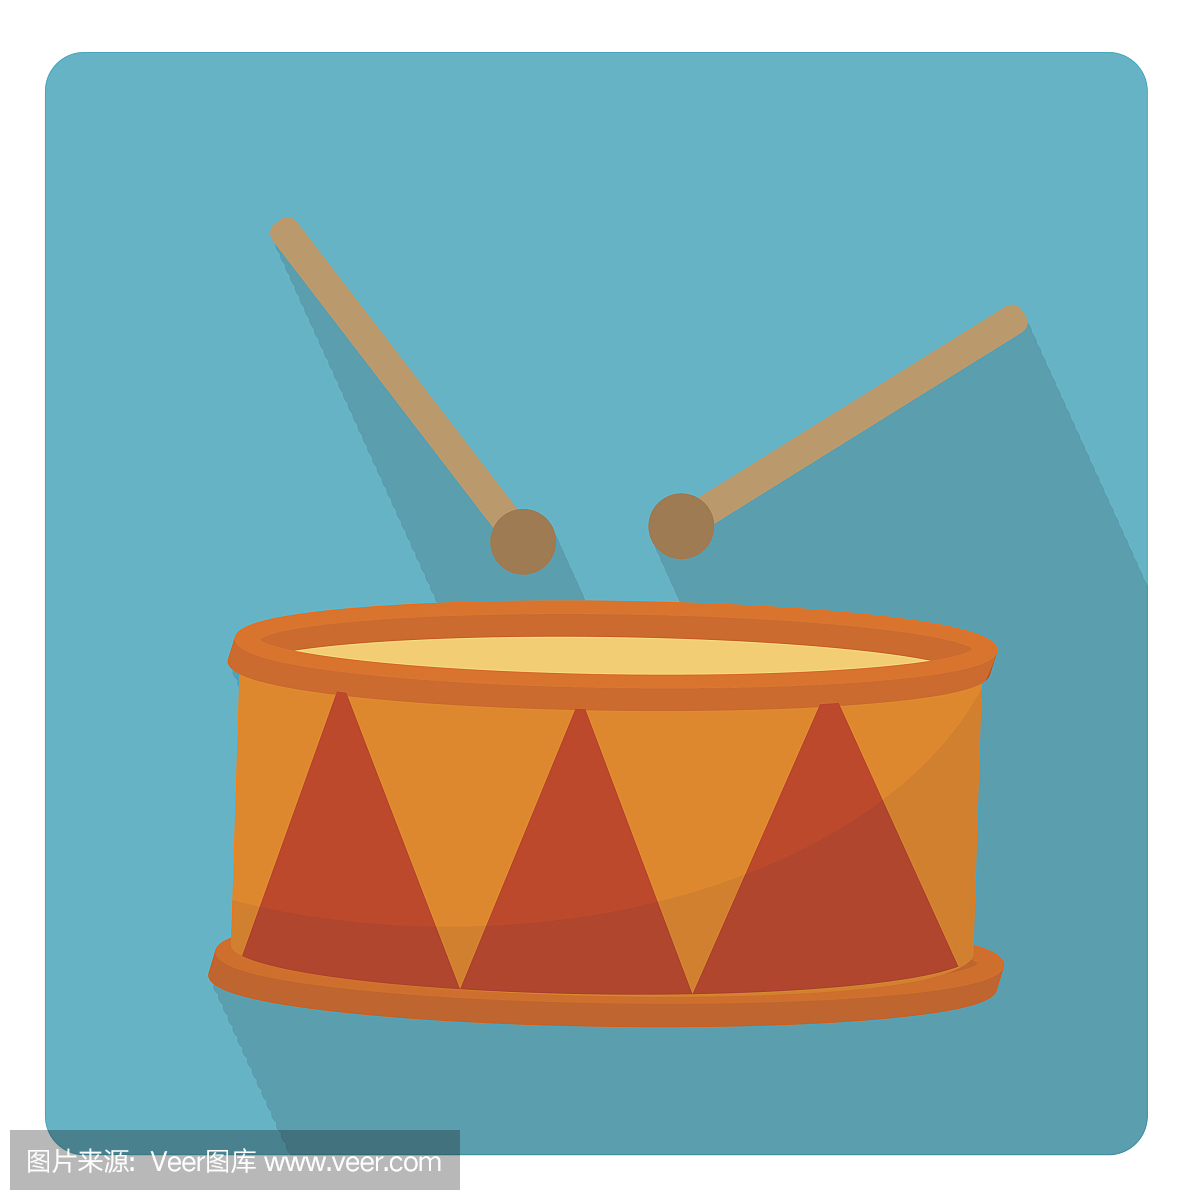 鼓是一种乐器图标样式,带有长长的阴影,孤立在白色背景上。矢量插图。